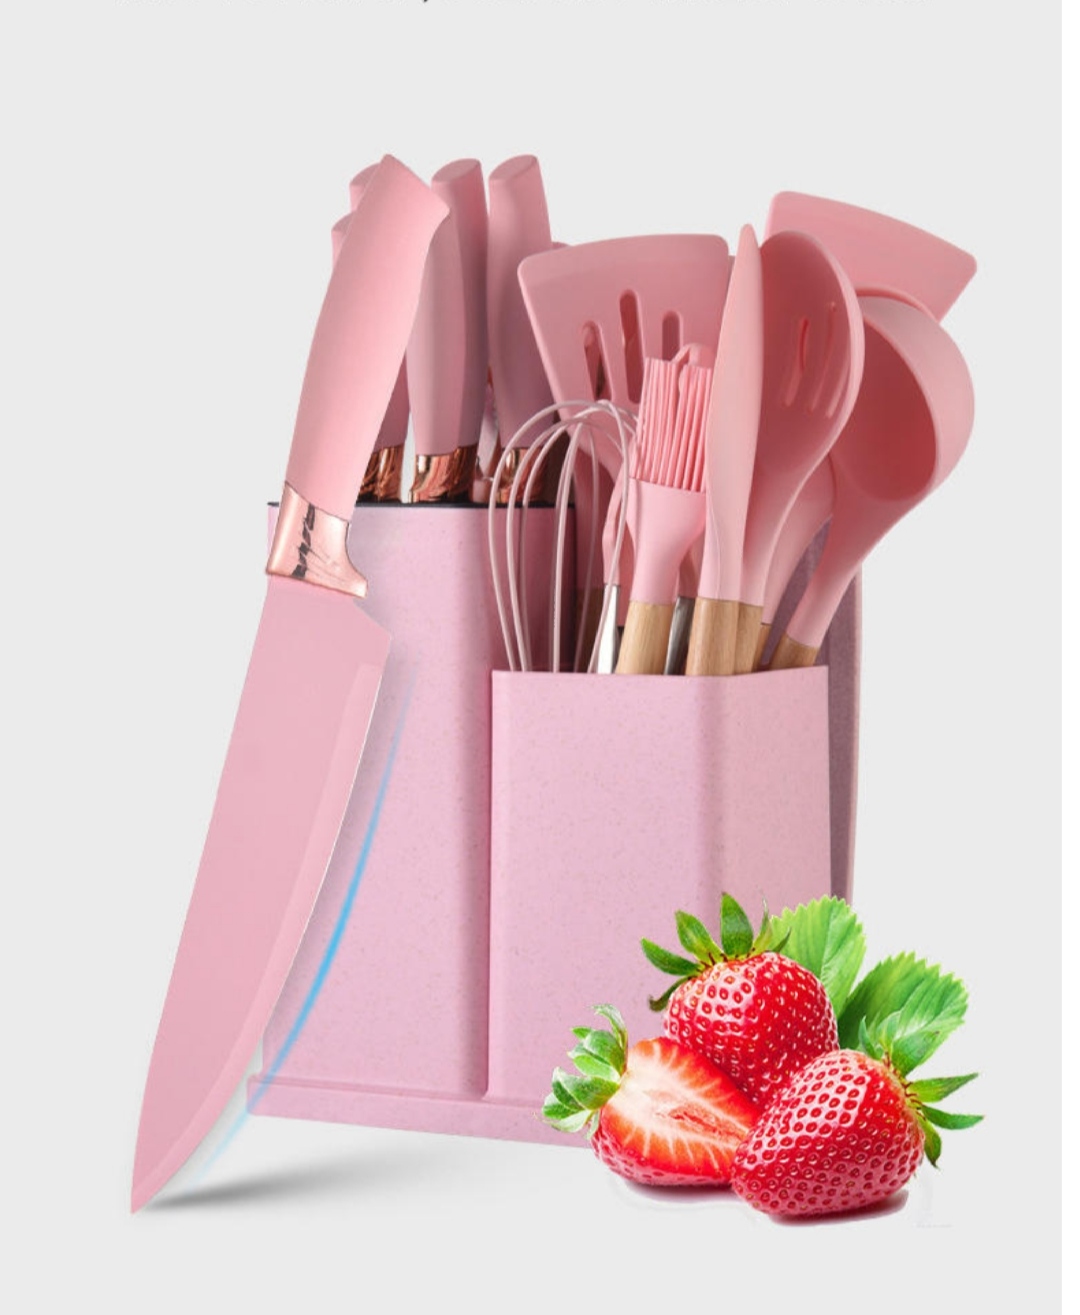 Кухонный набор OEM 19 предметов силиконовый розовый